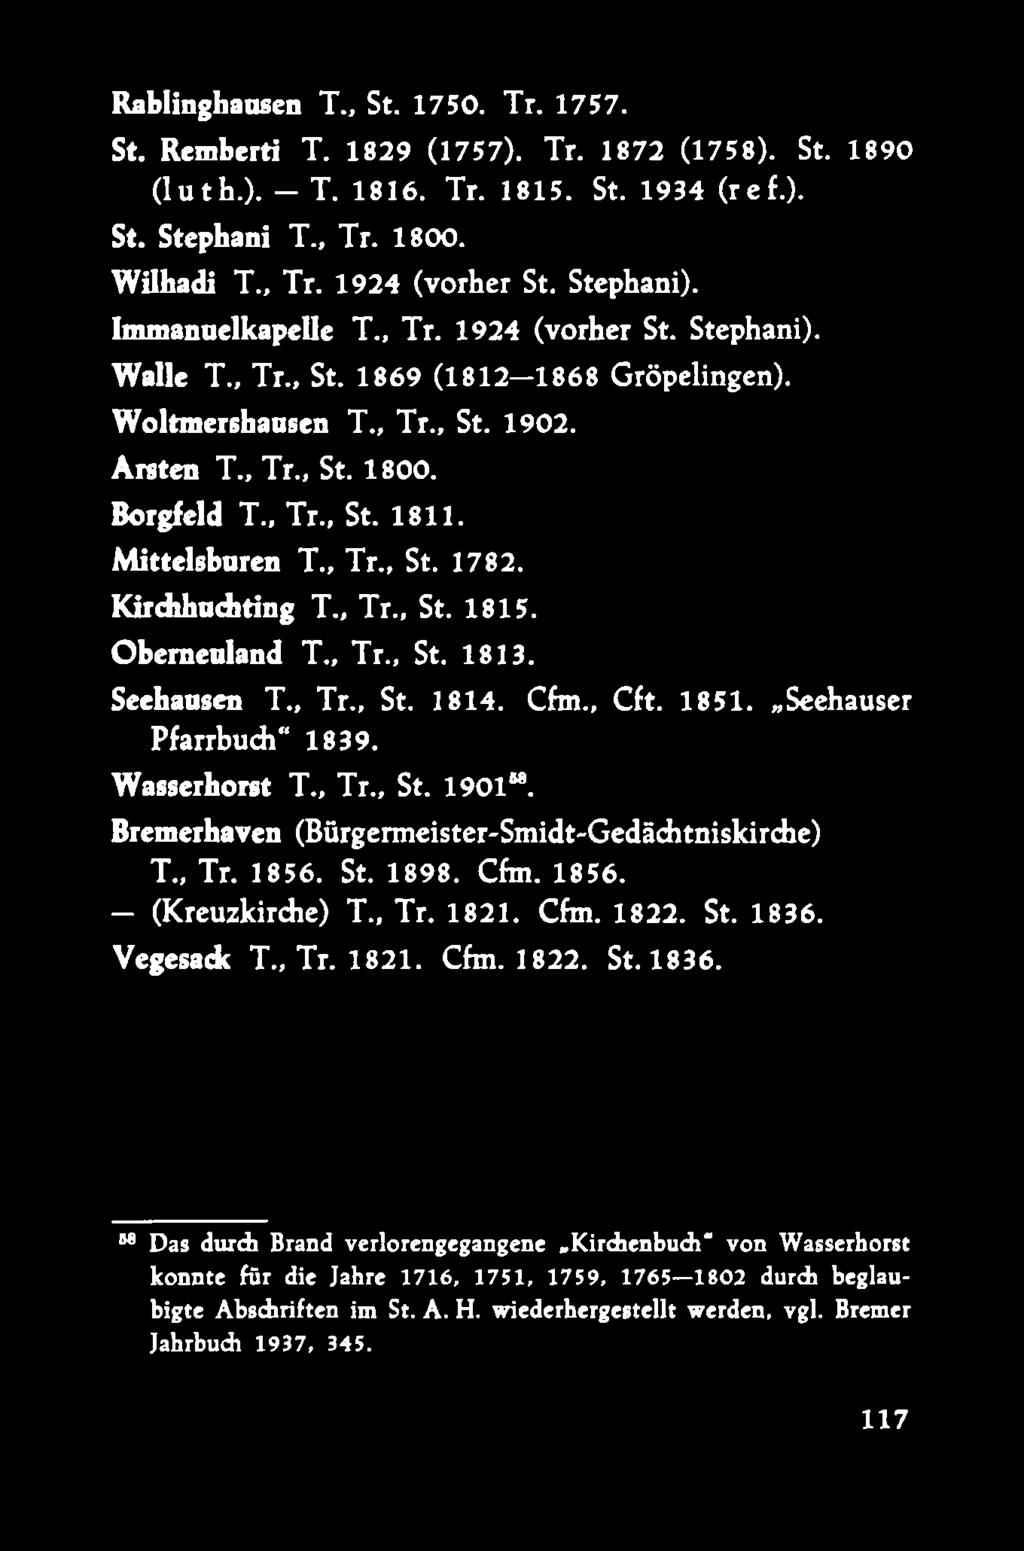 Mittelsbaren T., Tr., St. 1782. Kirdihaditing T., Tr., St. 1815. Obemealand T., Tr., St. 1813. Seehausen T., Tr., St. 1814. Cfm., Cft. 1851. Seehauser Pfarrbudi 1839. Wasserhorst T., Tr., St. 1901.